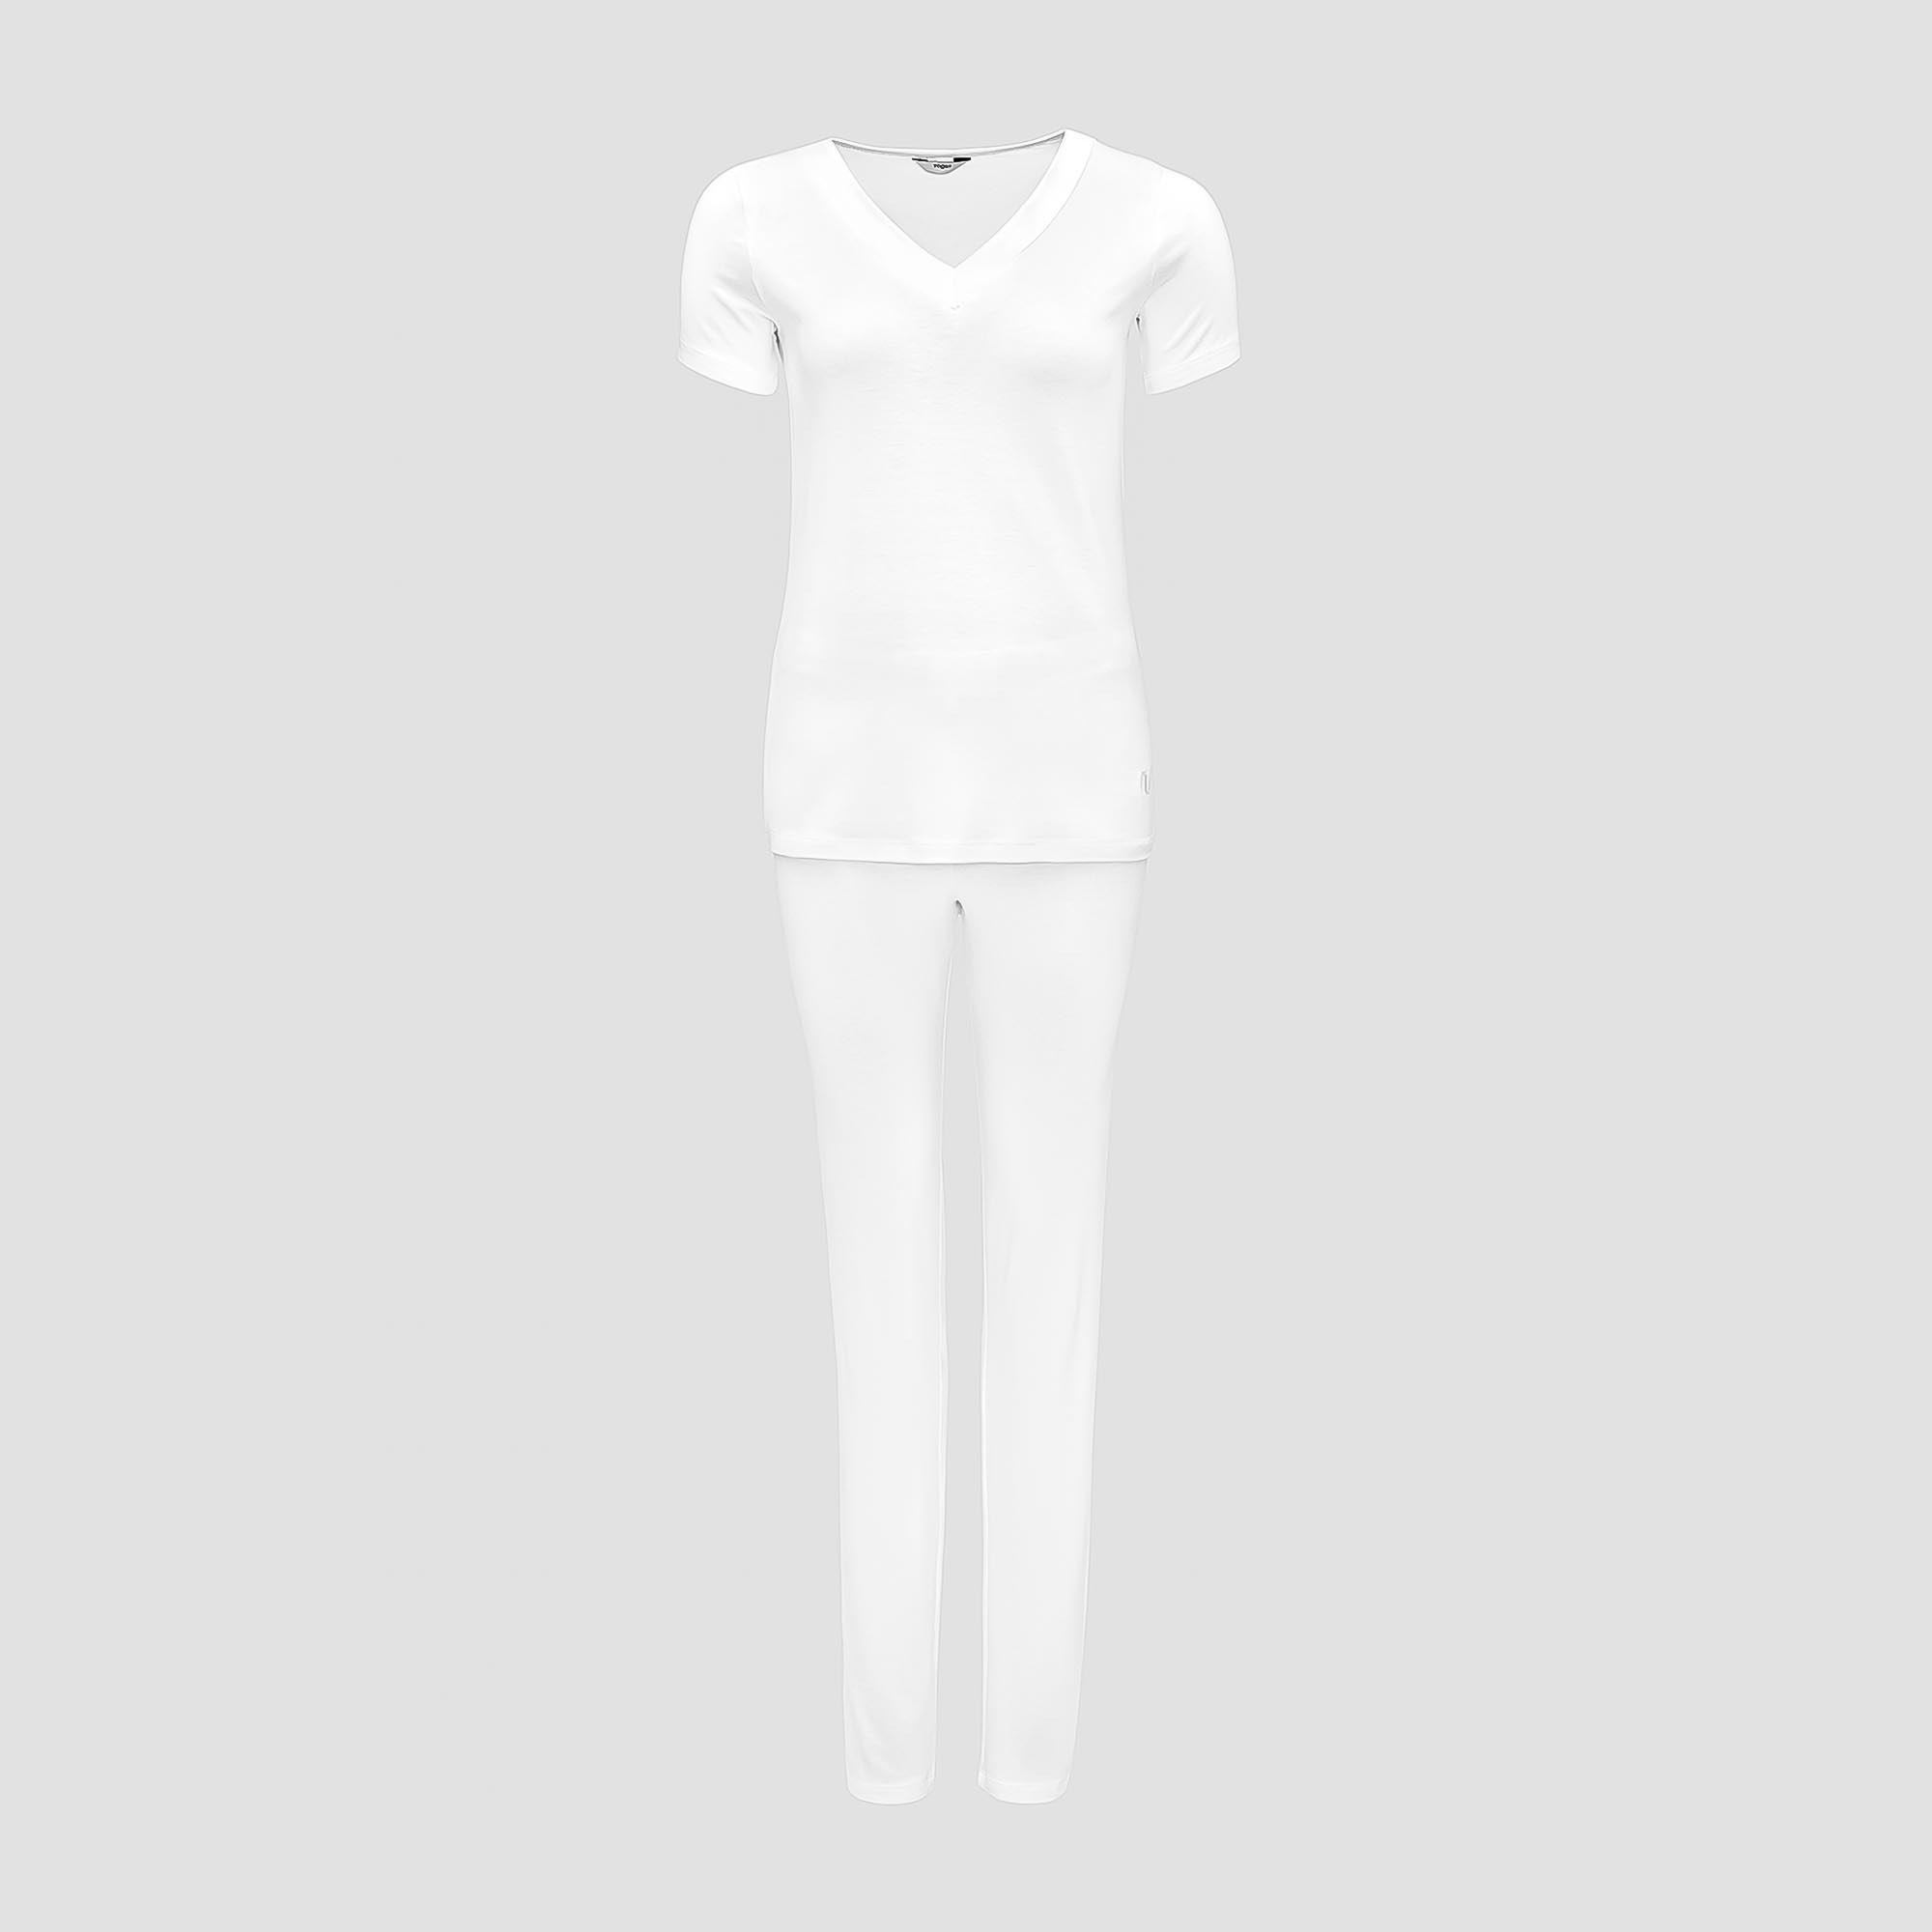 Пижама Togas Ингелла белая женская M(46) 2 предмета